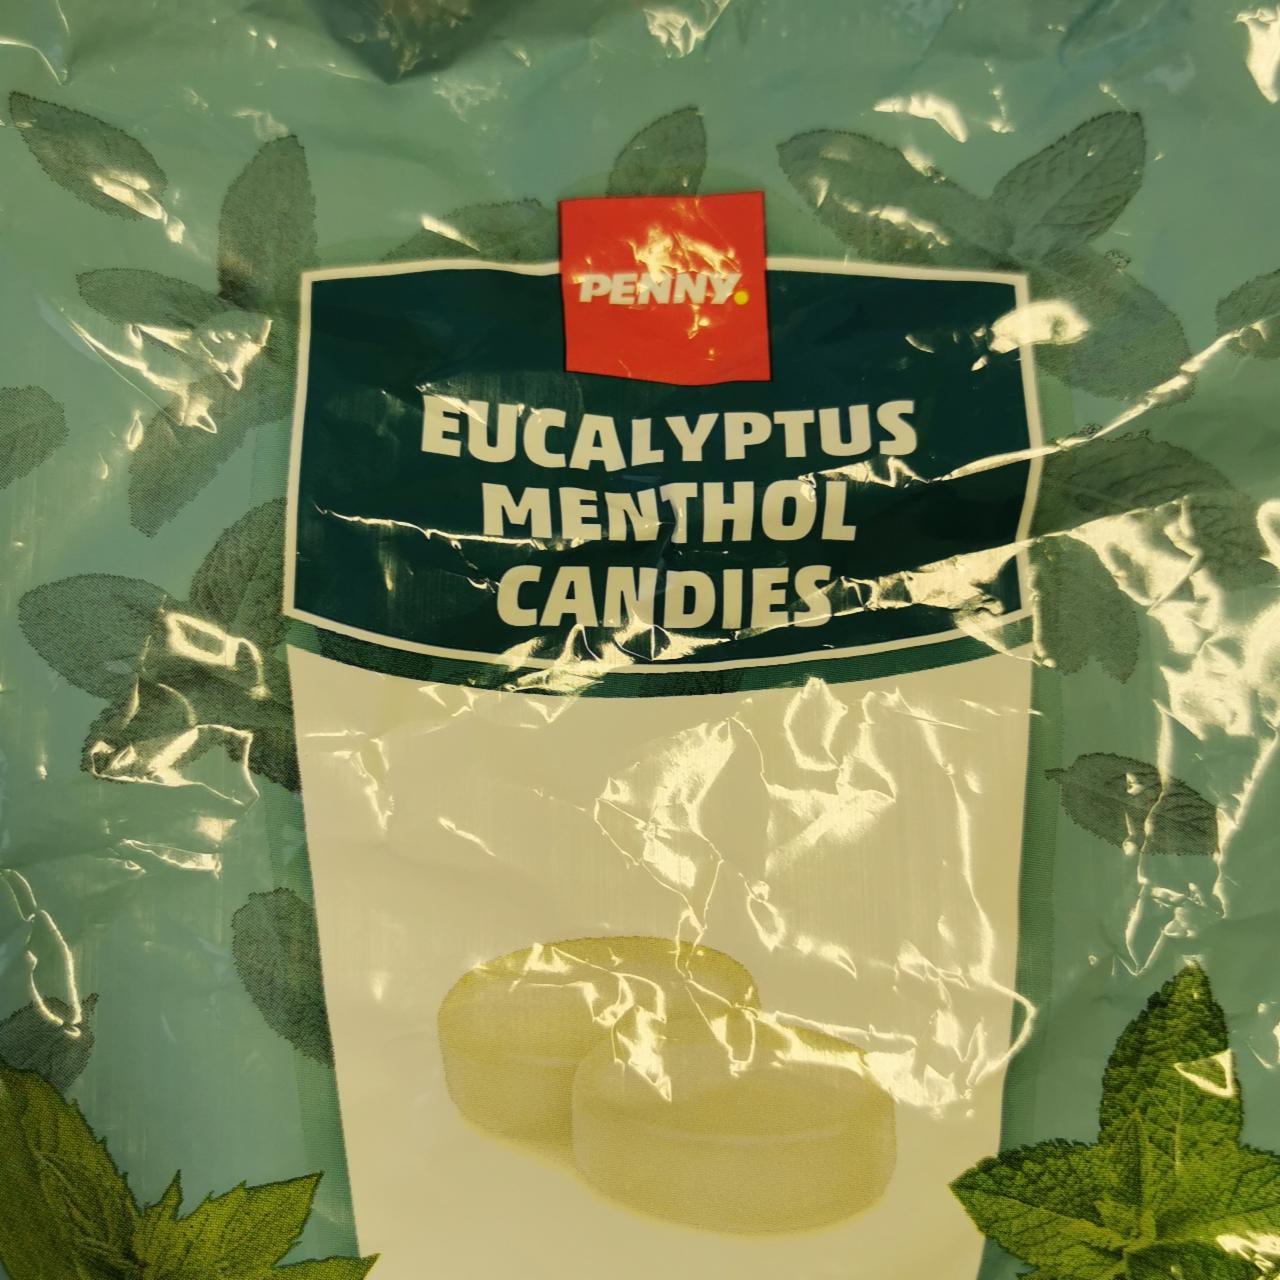 Képek - Eucalyptus menthol candies Penny